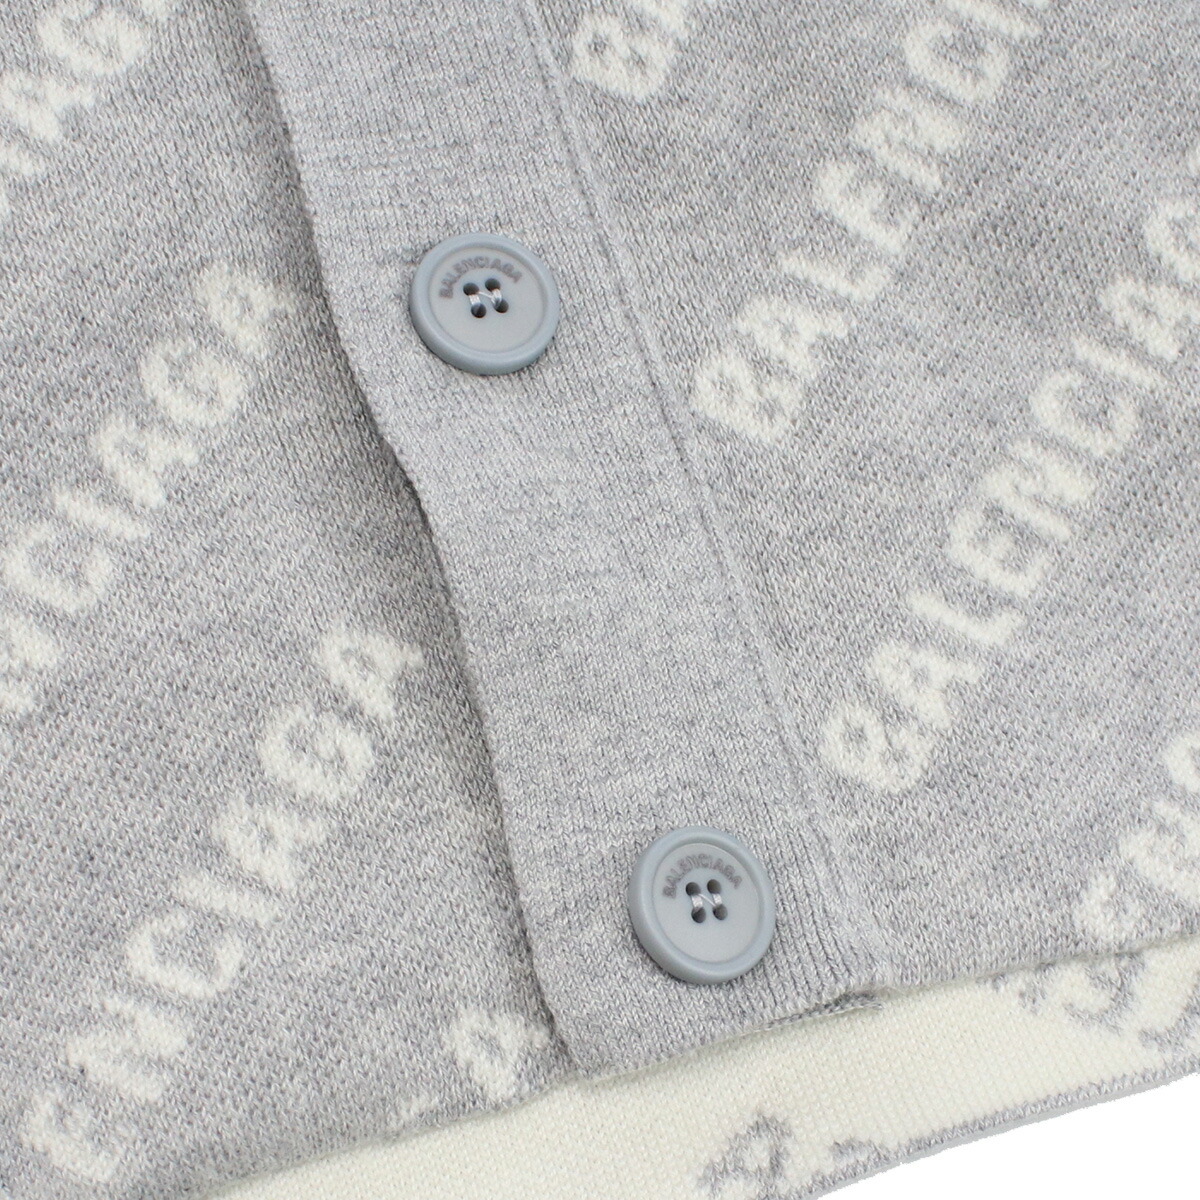 Armerie Boutique / バレンシアガ BALENCIAGA メンズ－セーター ニット